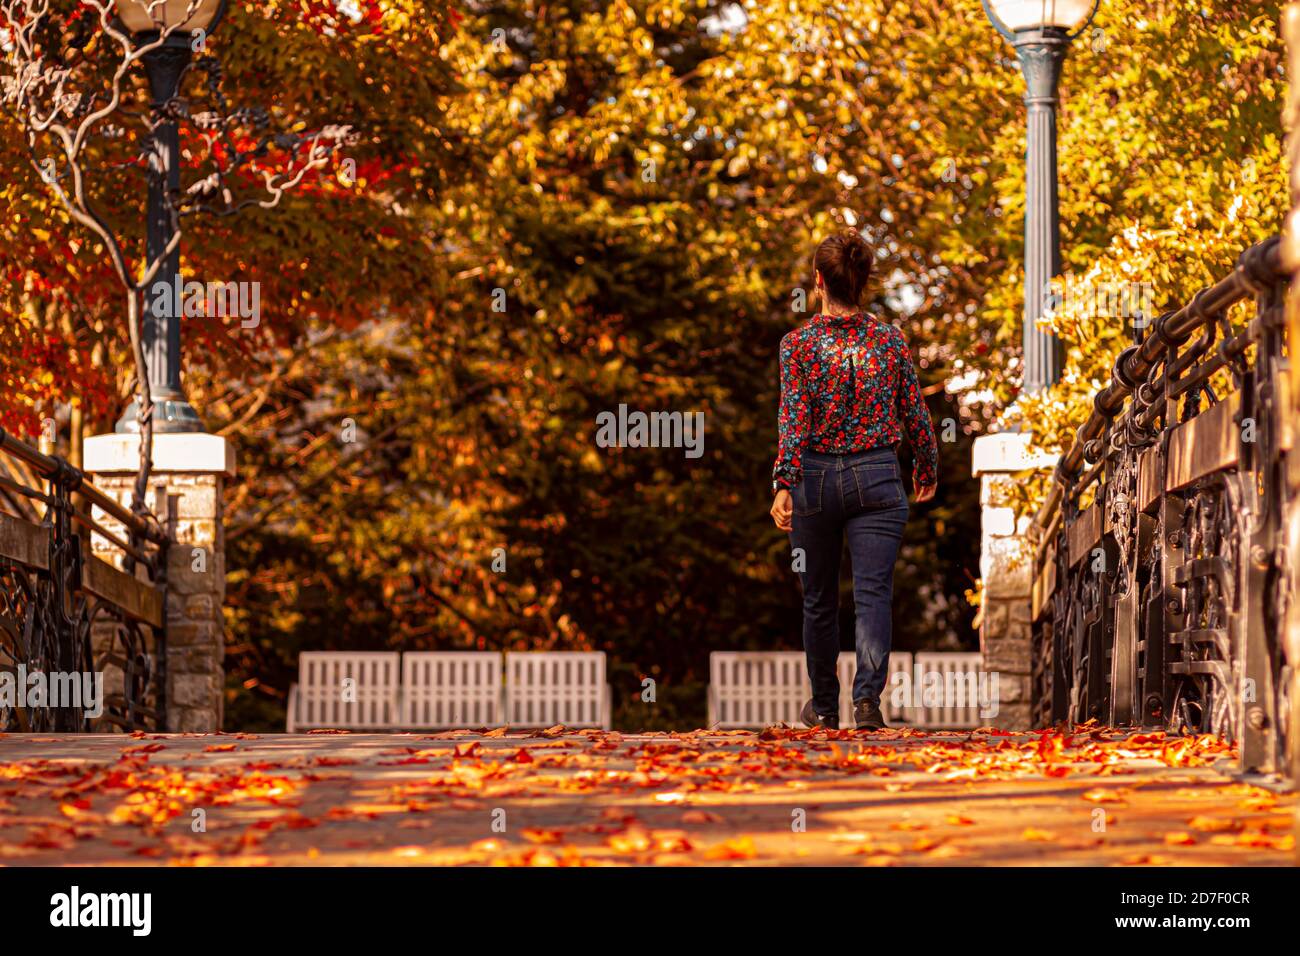 Eine junge kaukasische Frau mit Blumenhemd und Jeans geht allein in einem Stadtpark. Es ist eine wunderschöne Herbstszene mit bunten Blättern, die darauf gefallen sind Stockfoto